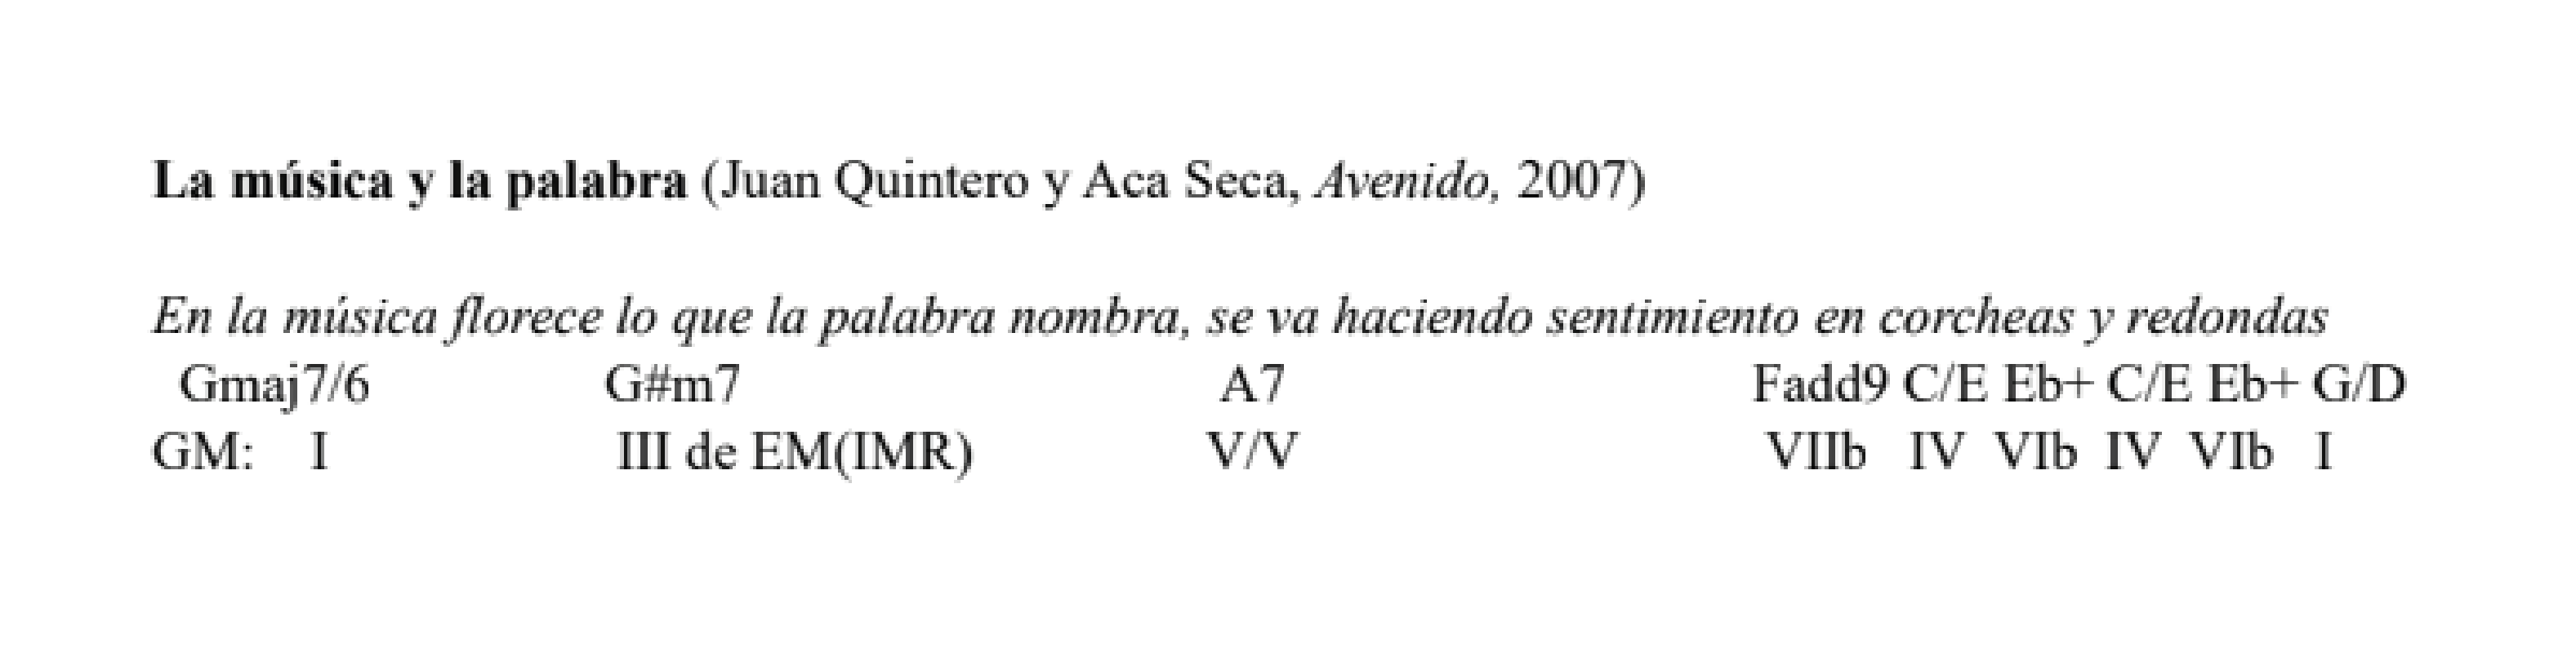 «La música
y la palabra» (Juan
Quintero y Aca Seca, Avenido, 2007)